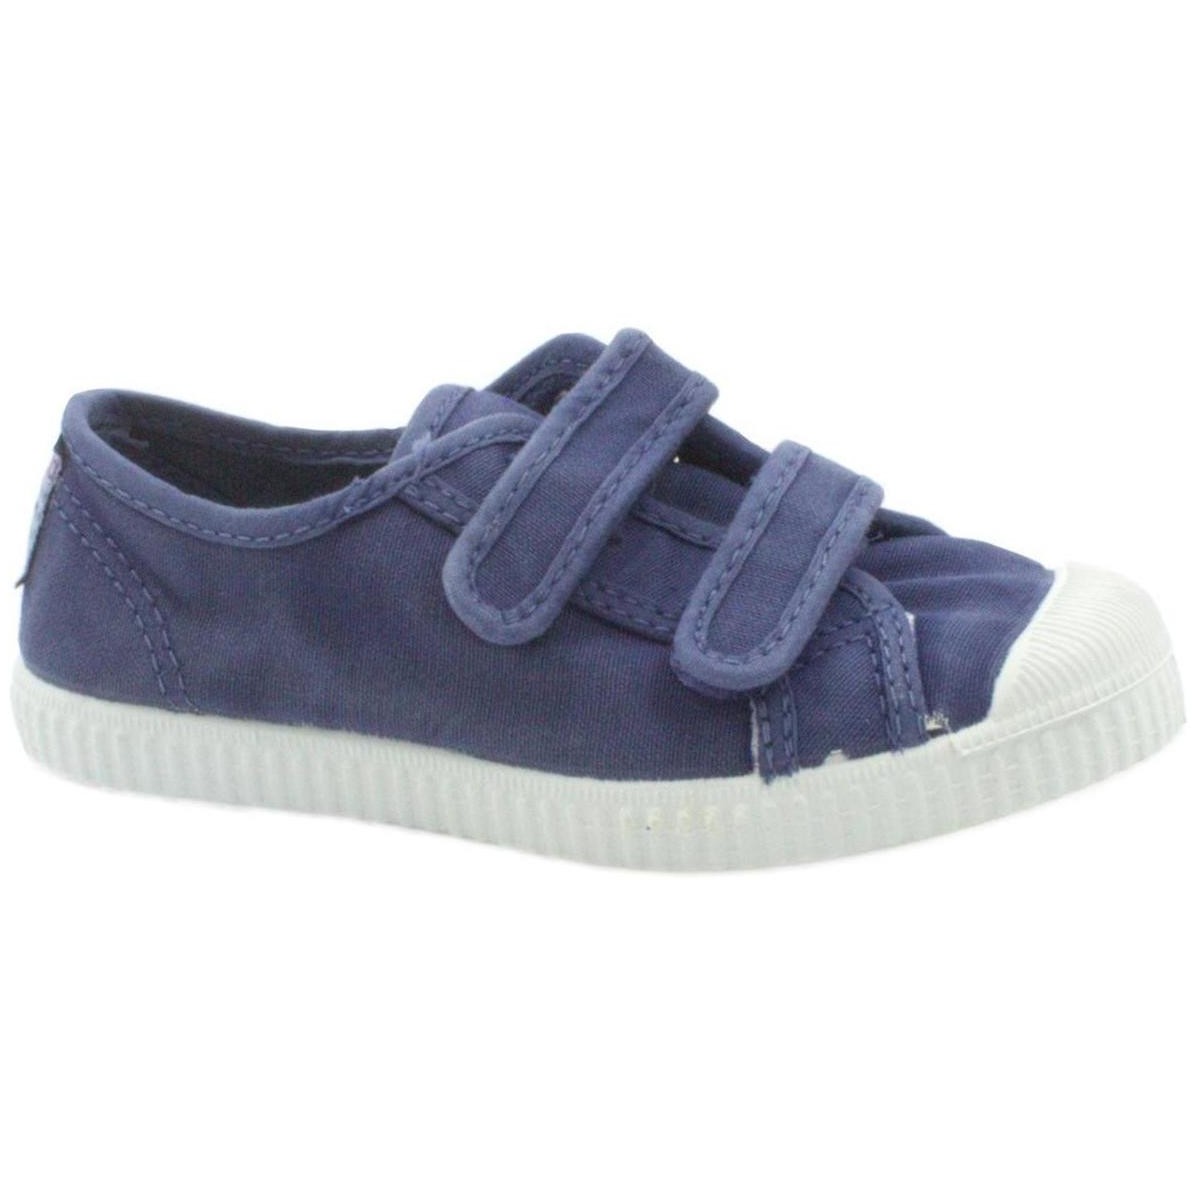 Sapatos Criança Sapatilhas Cienta CIE-CCC-78777-84 Azul